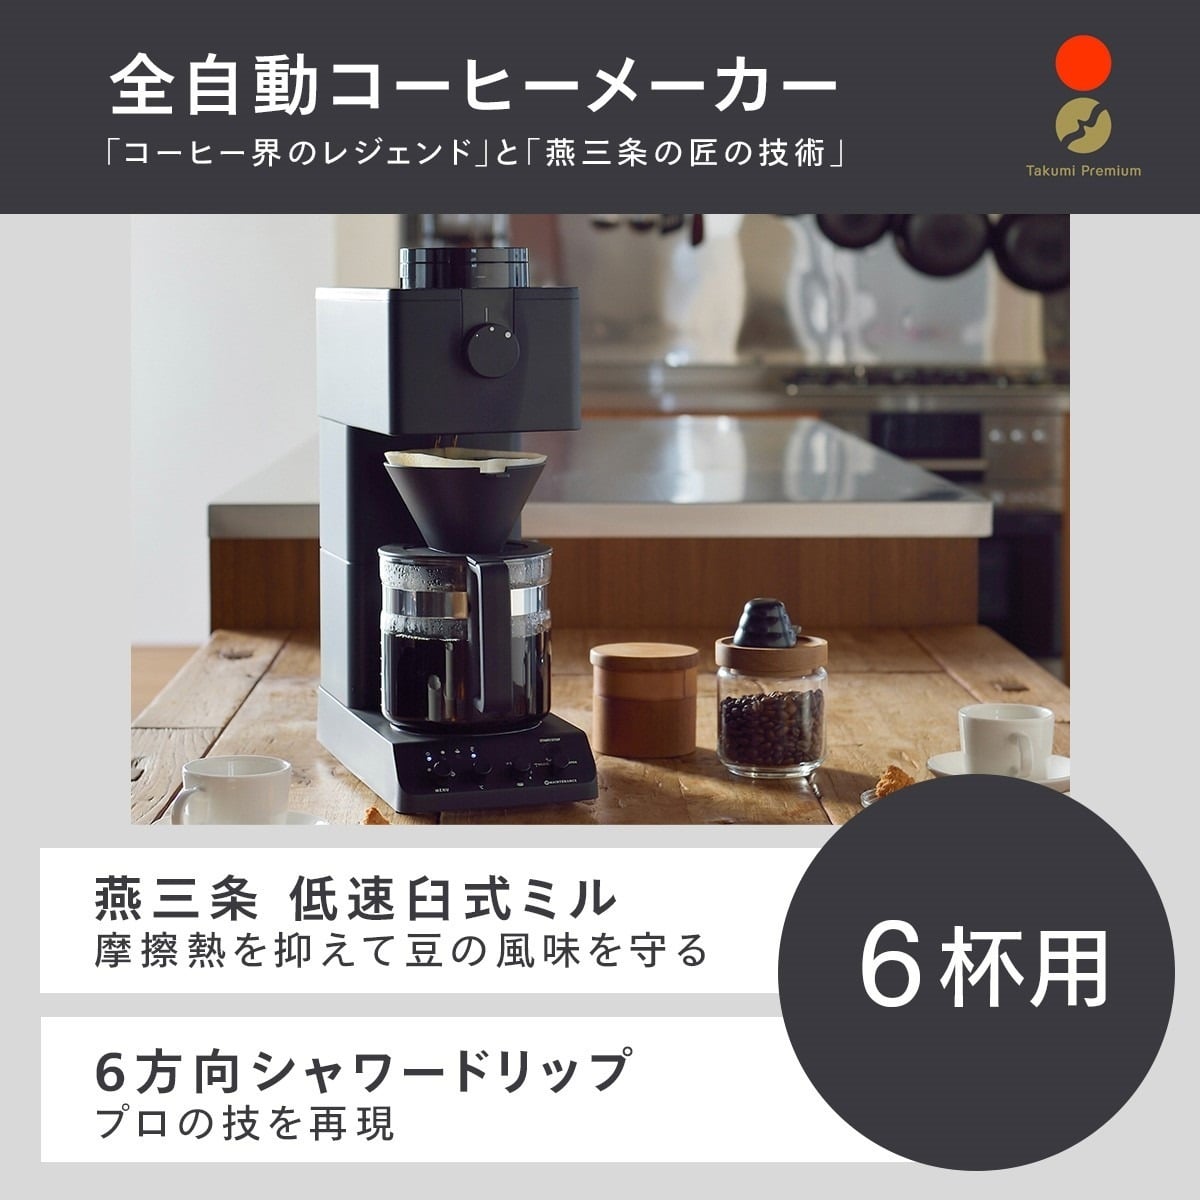 ツインバード CM-D465B 全自動コーヒーメーカー 山崎実業 キッチン ...